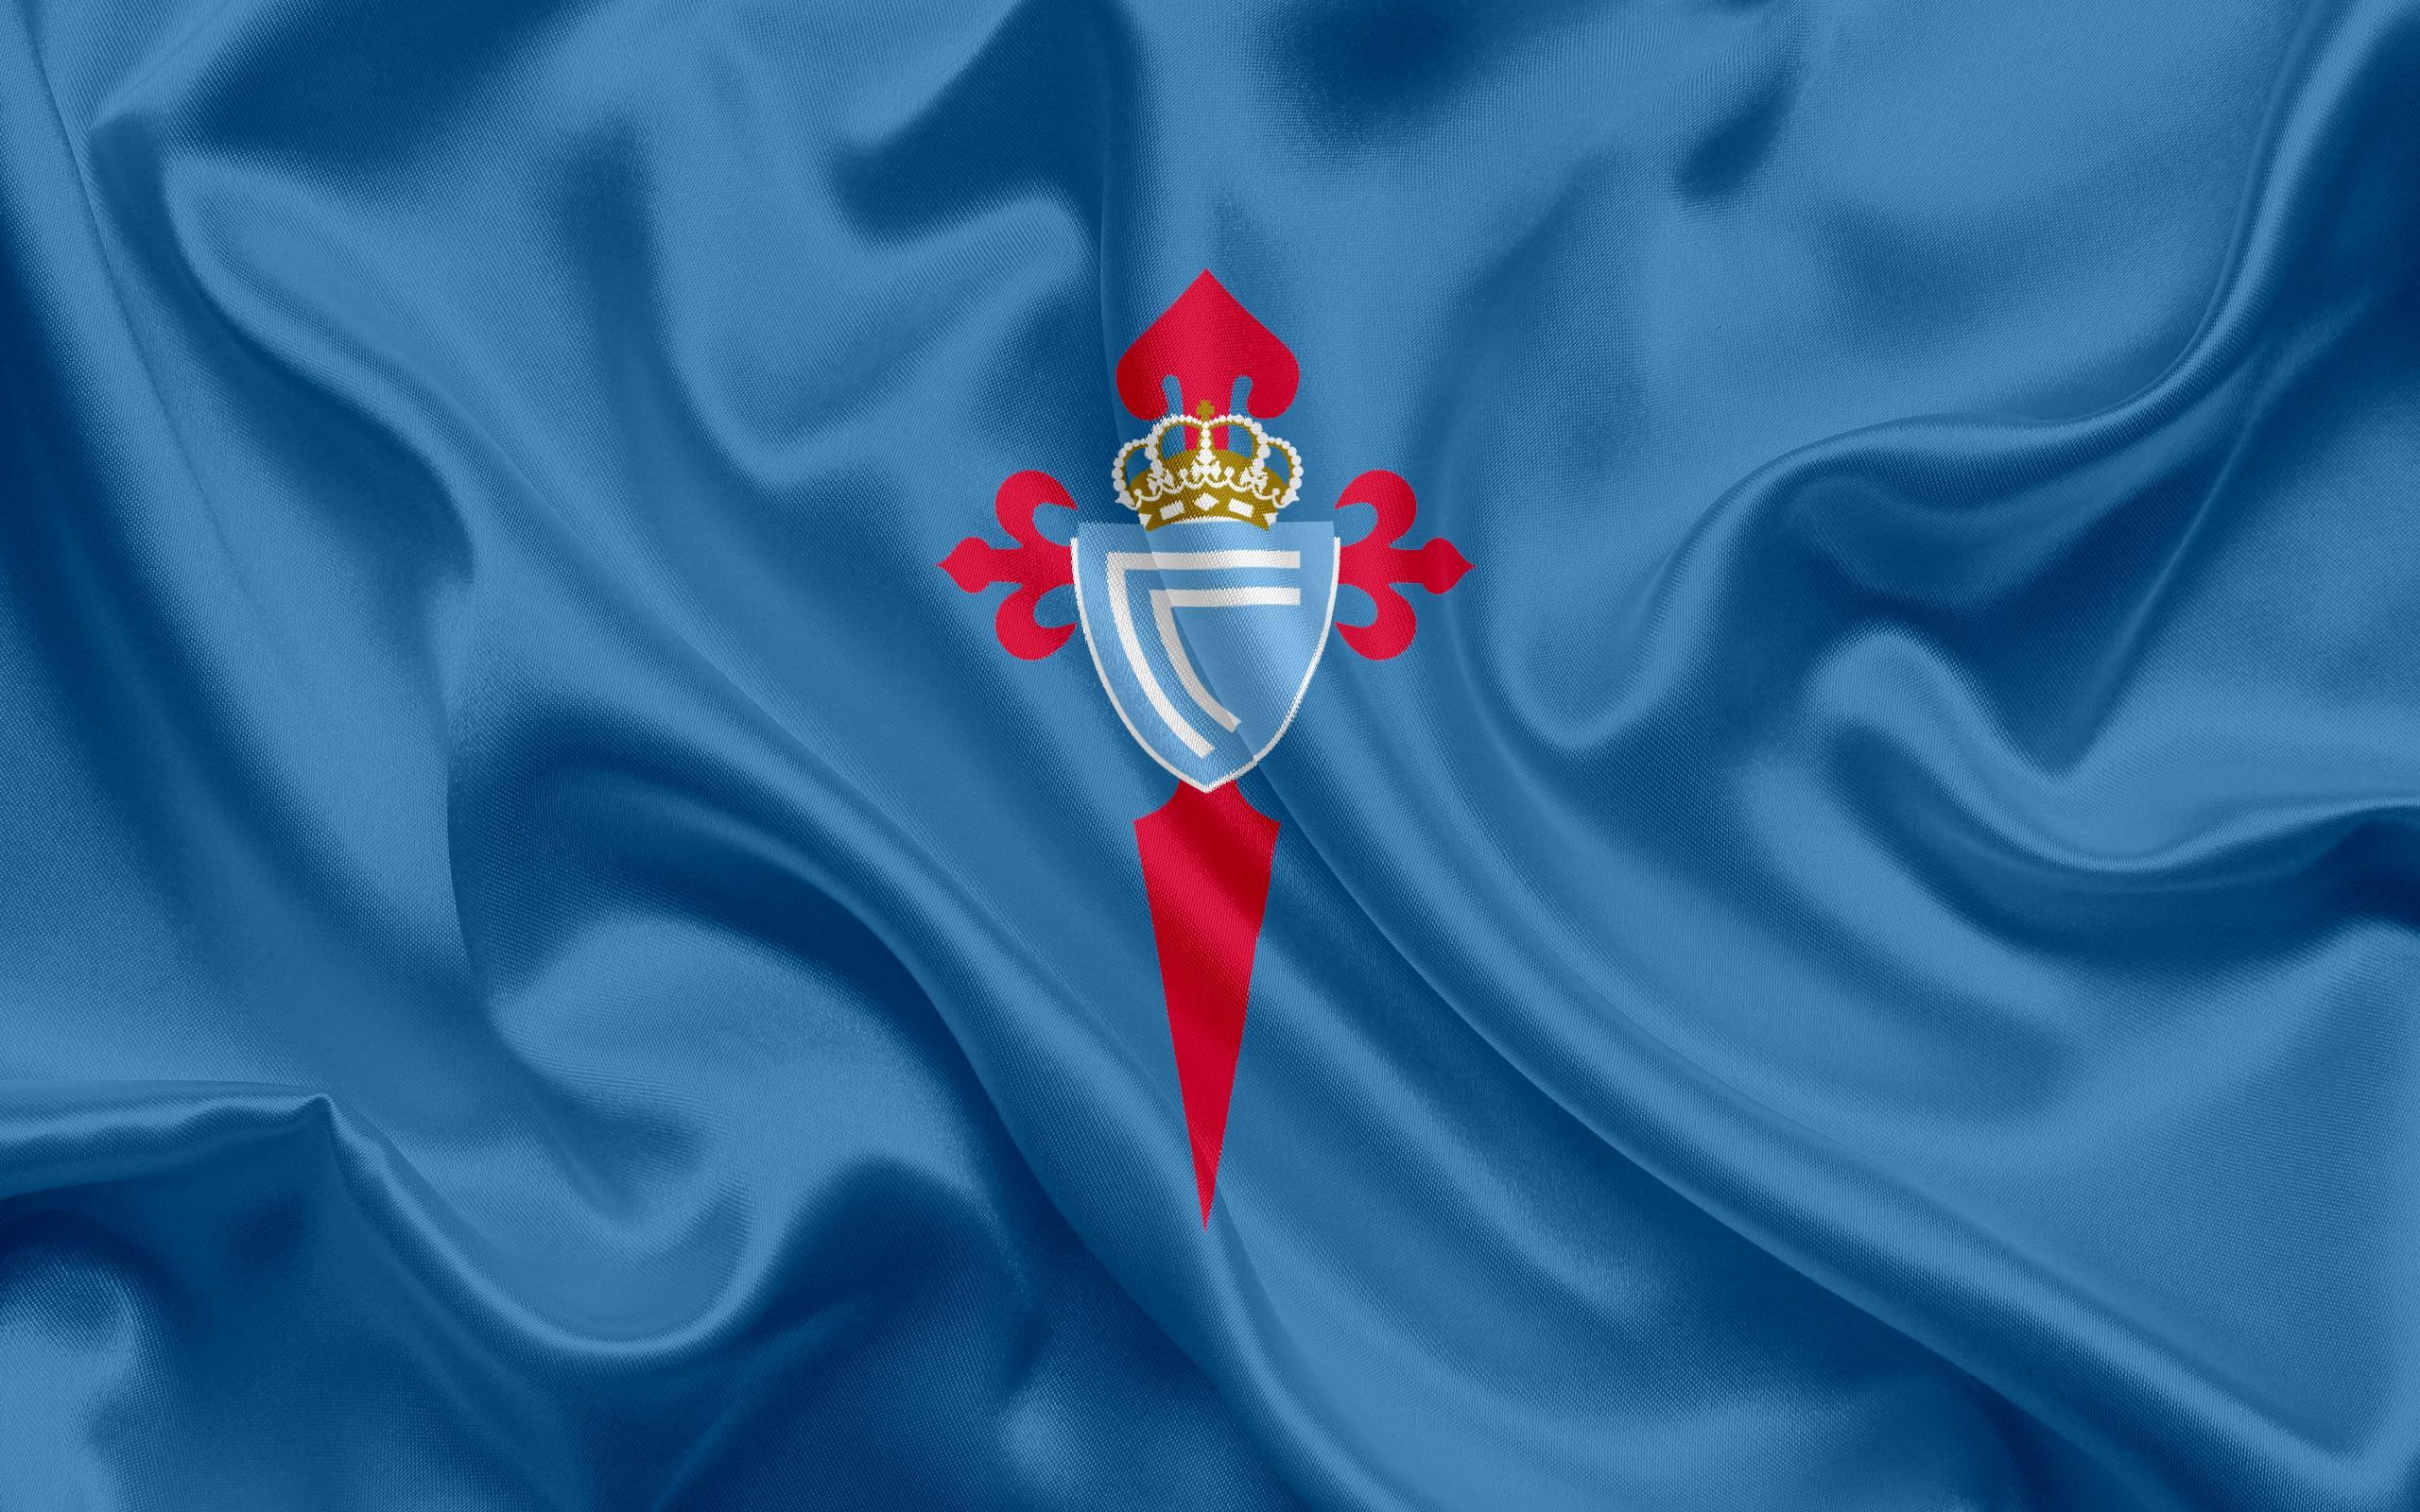 Download wallpaper Celta, football club, Celta emblem, logo, La